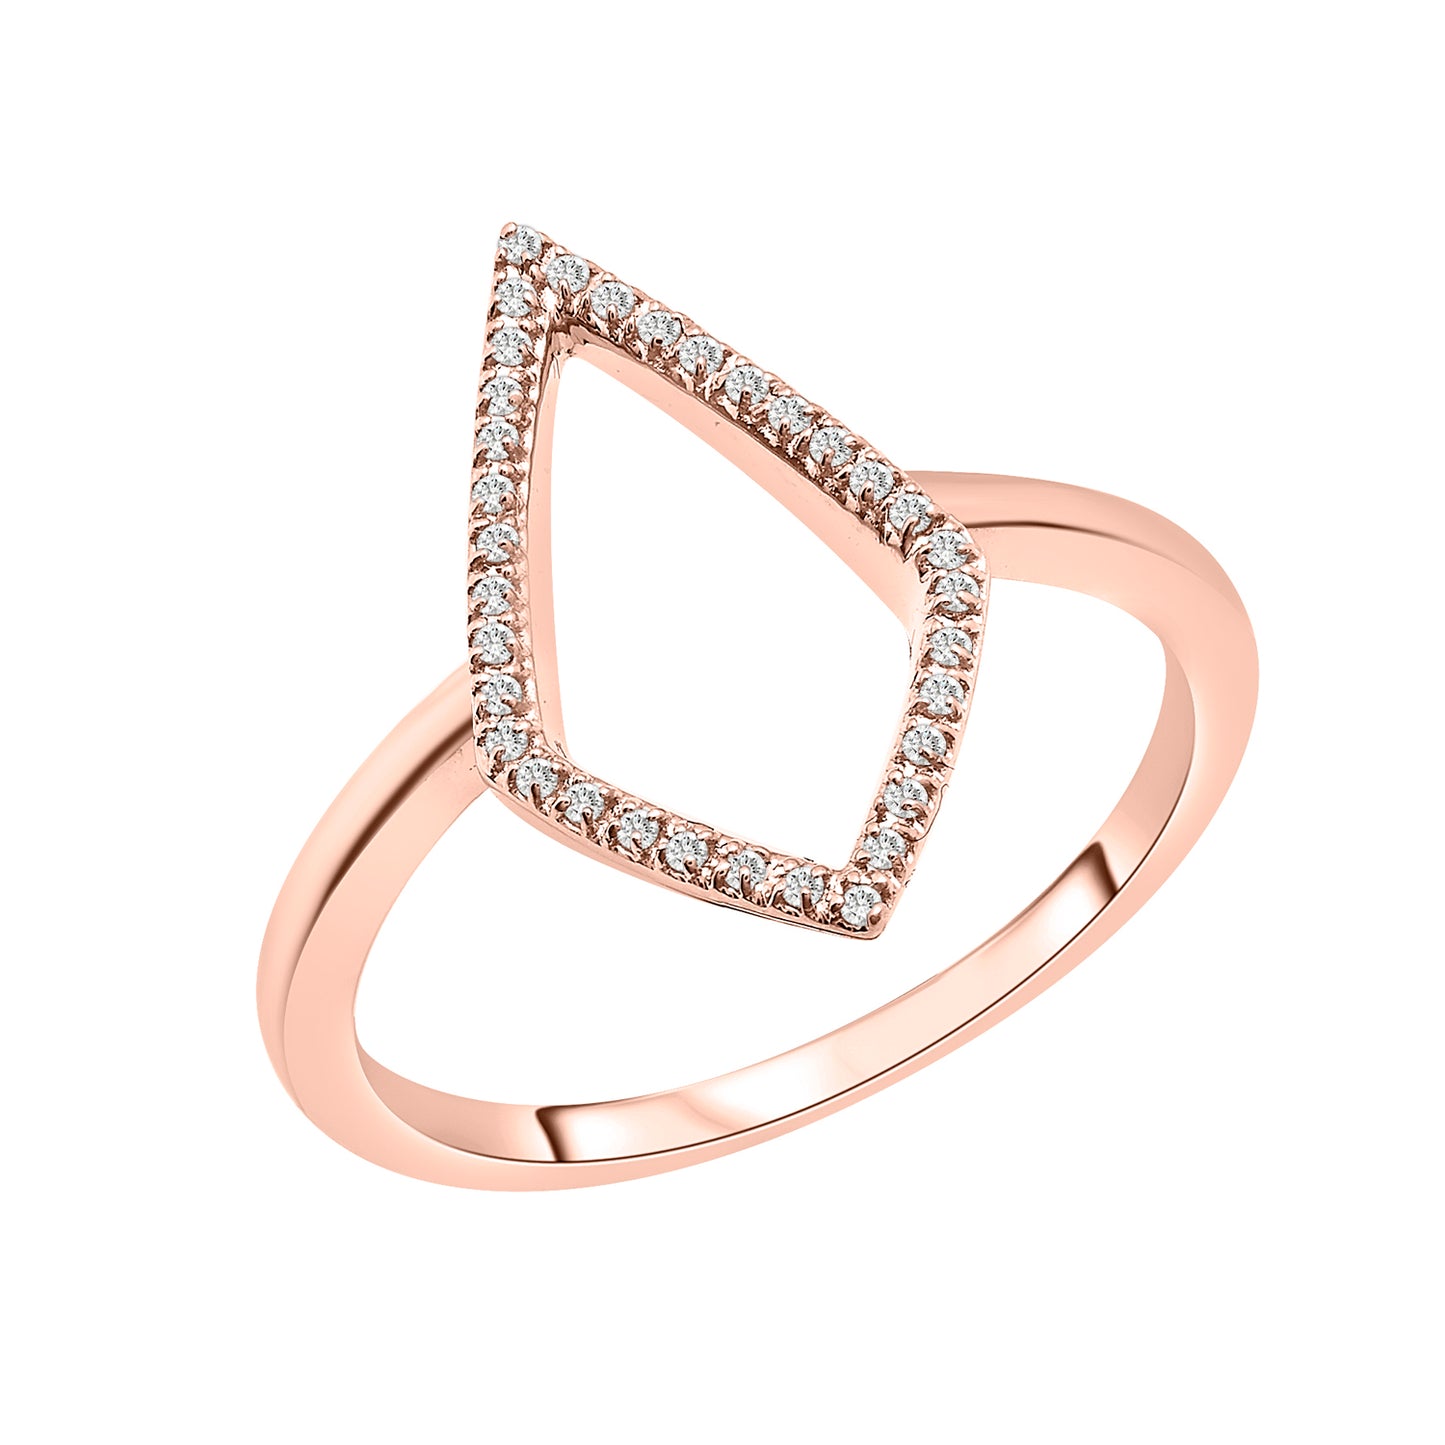 Rowan Open Shape Diamond Ring in Rose Gold